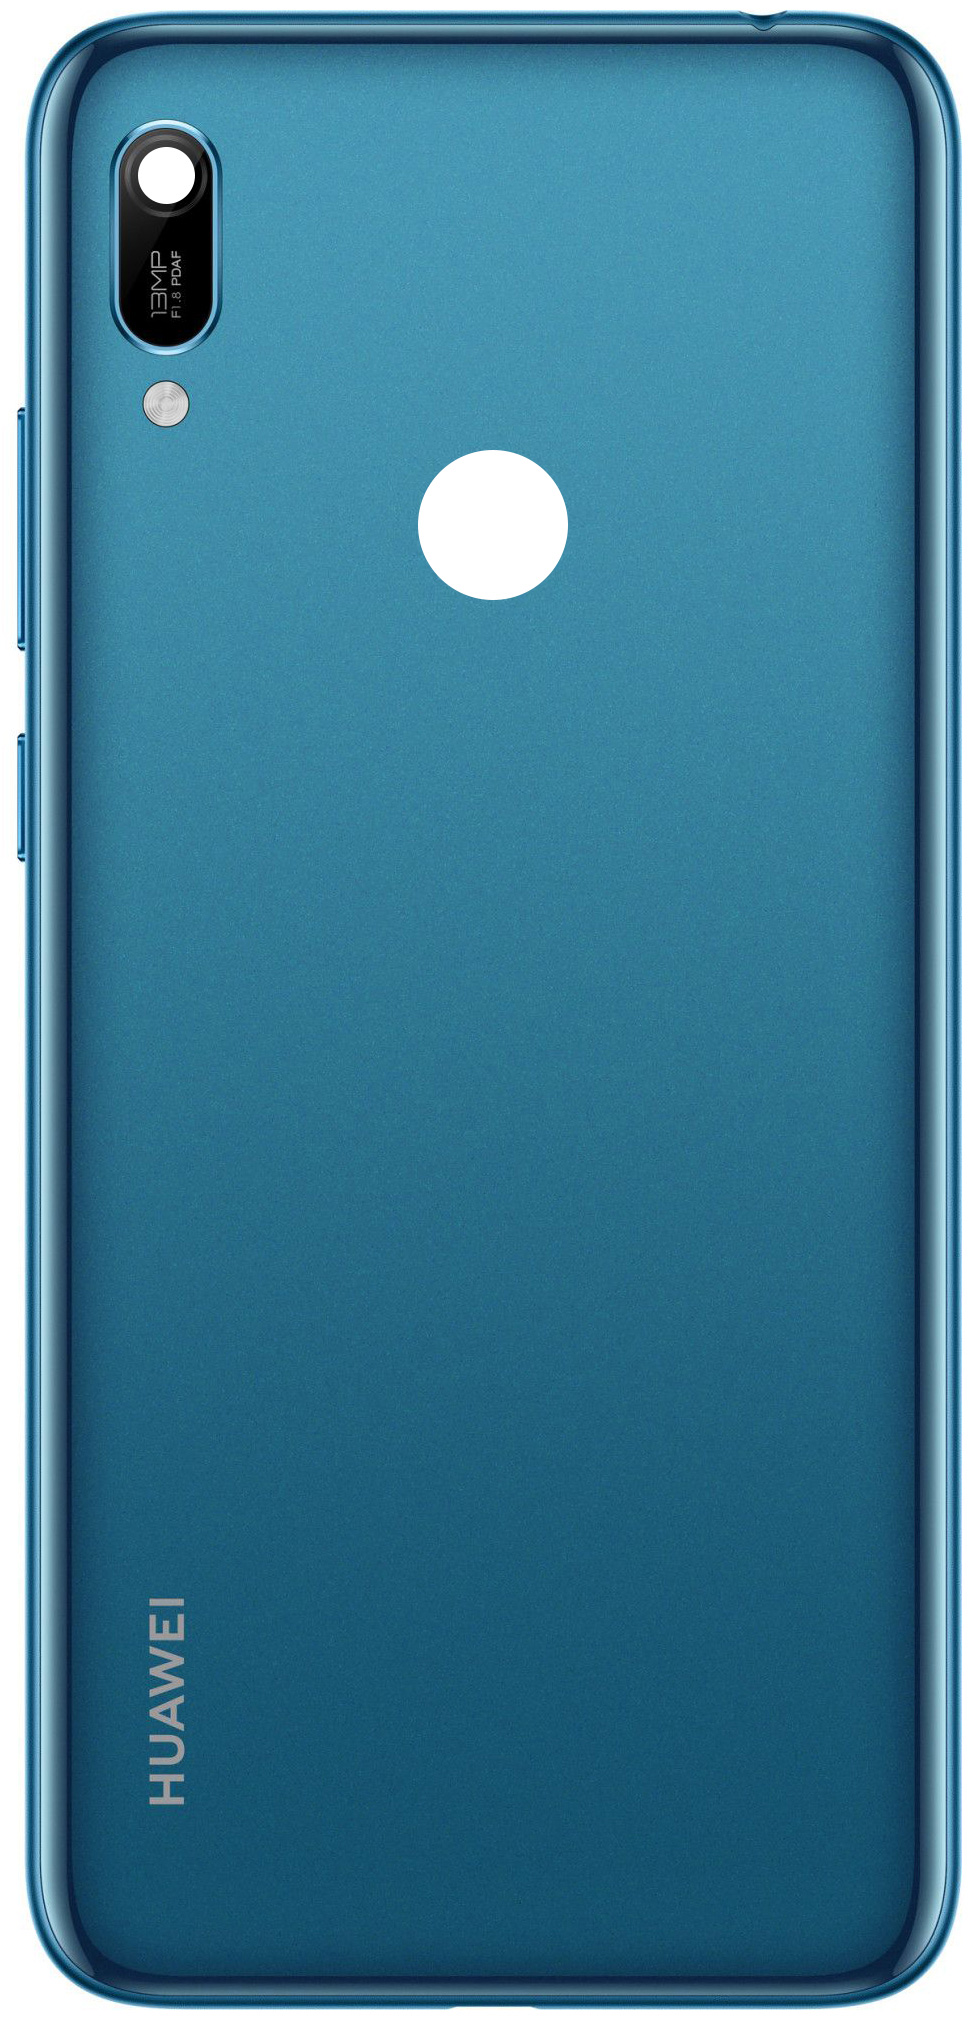 capac-baterie-huawei-y6-prime--282019-29-2C-albastru